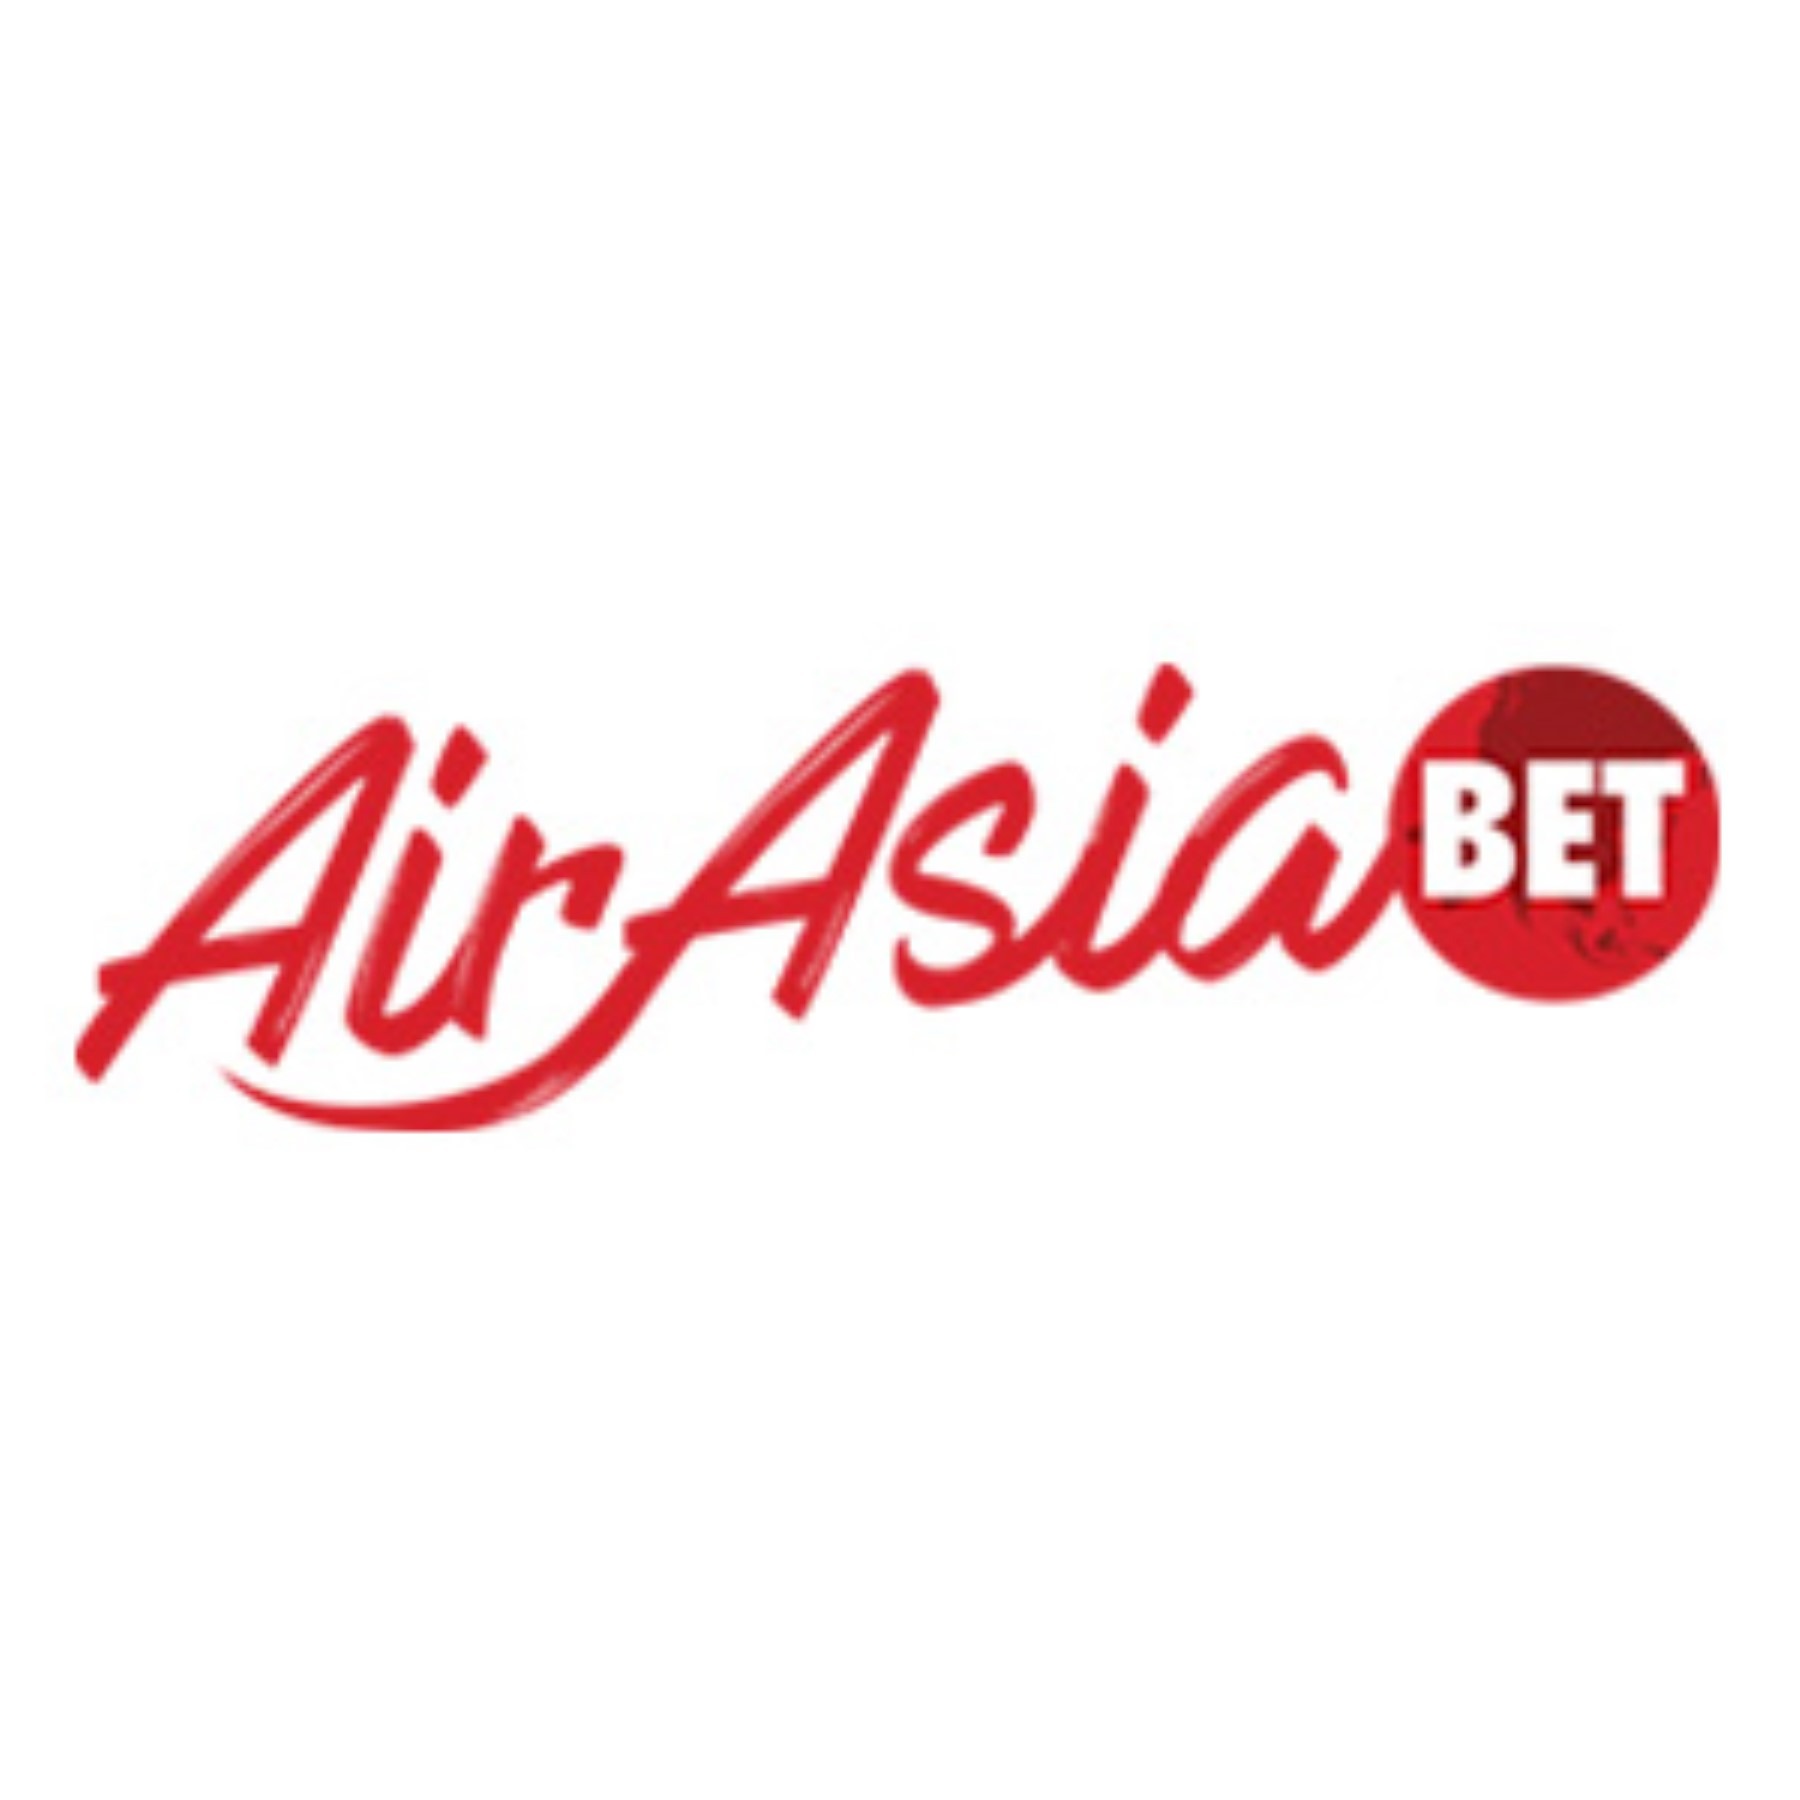 Airasiabet | Airasiabet Asia | Login Airasiabet | Slot Airasiabet